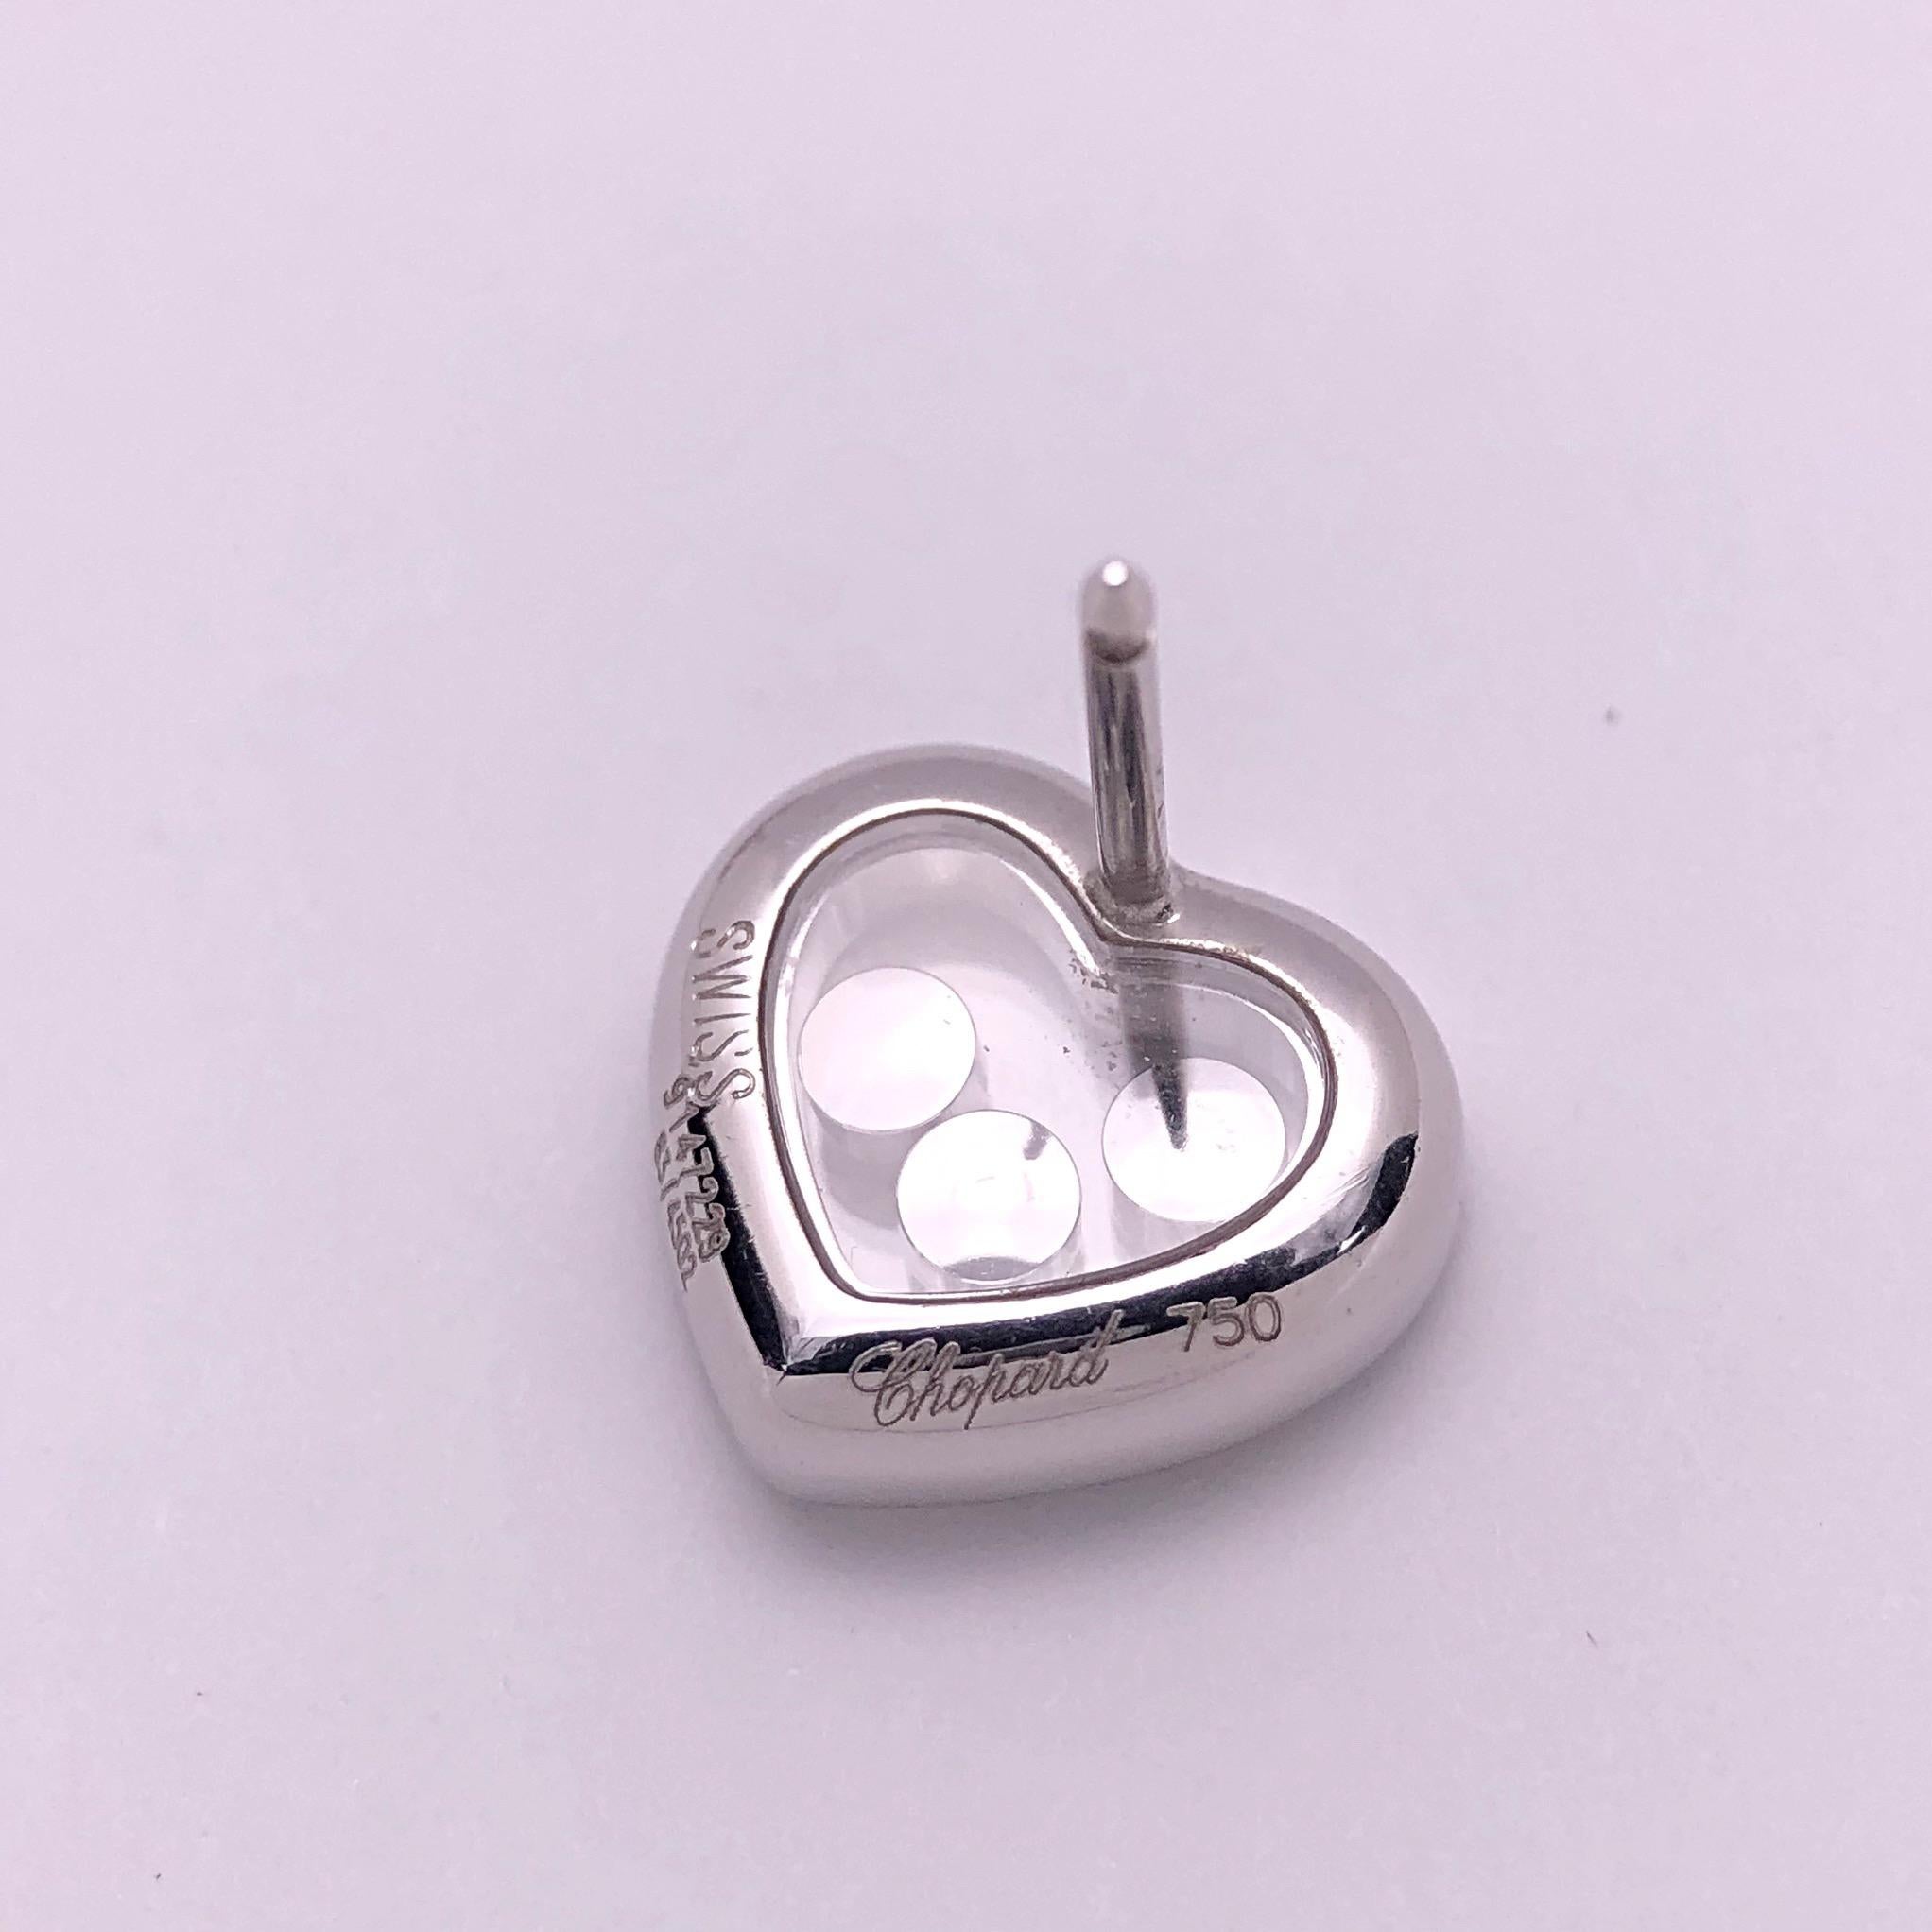 Klassische Chopard 18KT Weißgold  Happy Diamond Herz-Ohrringe mit einer einzigen Reihe runder Brillanten. Jeder Ohrring hat 3 schwebende, in die Lünette gefasste Diamanten. Die Herzen messen 12,5 mm x 11 mm x 3,5 mm.
Sie haben eine